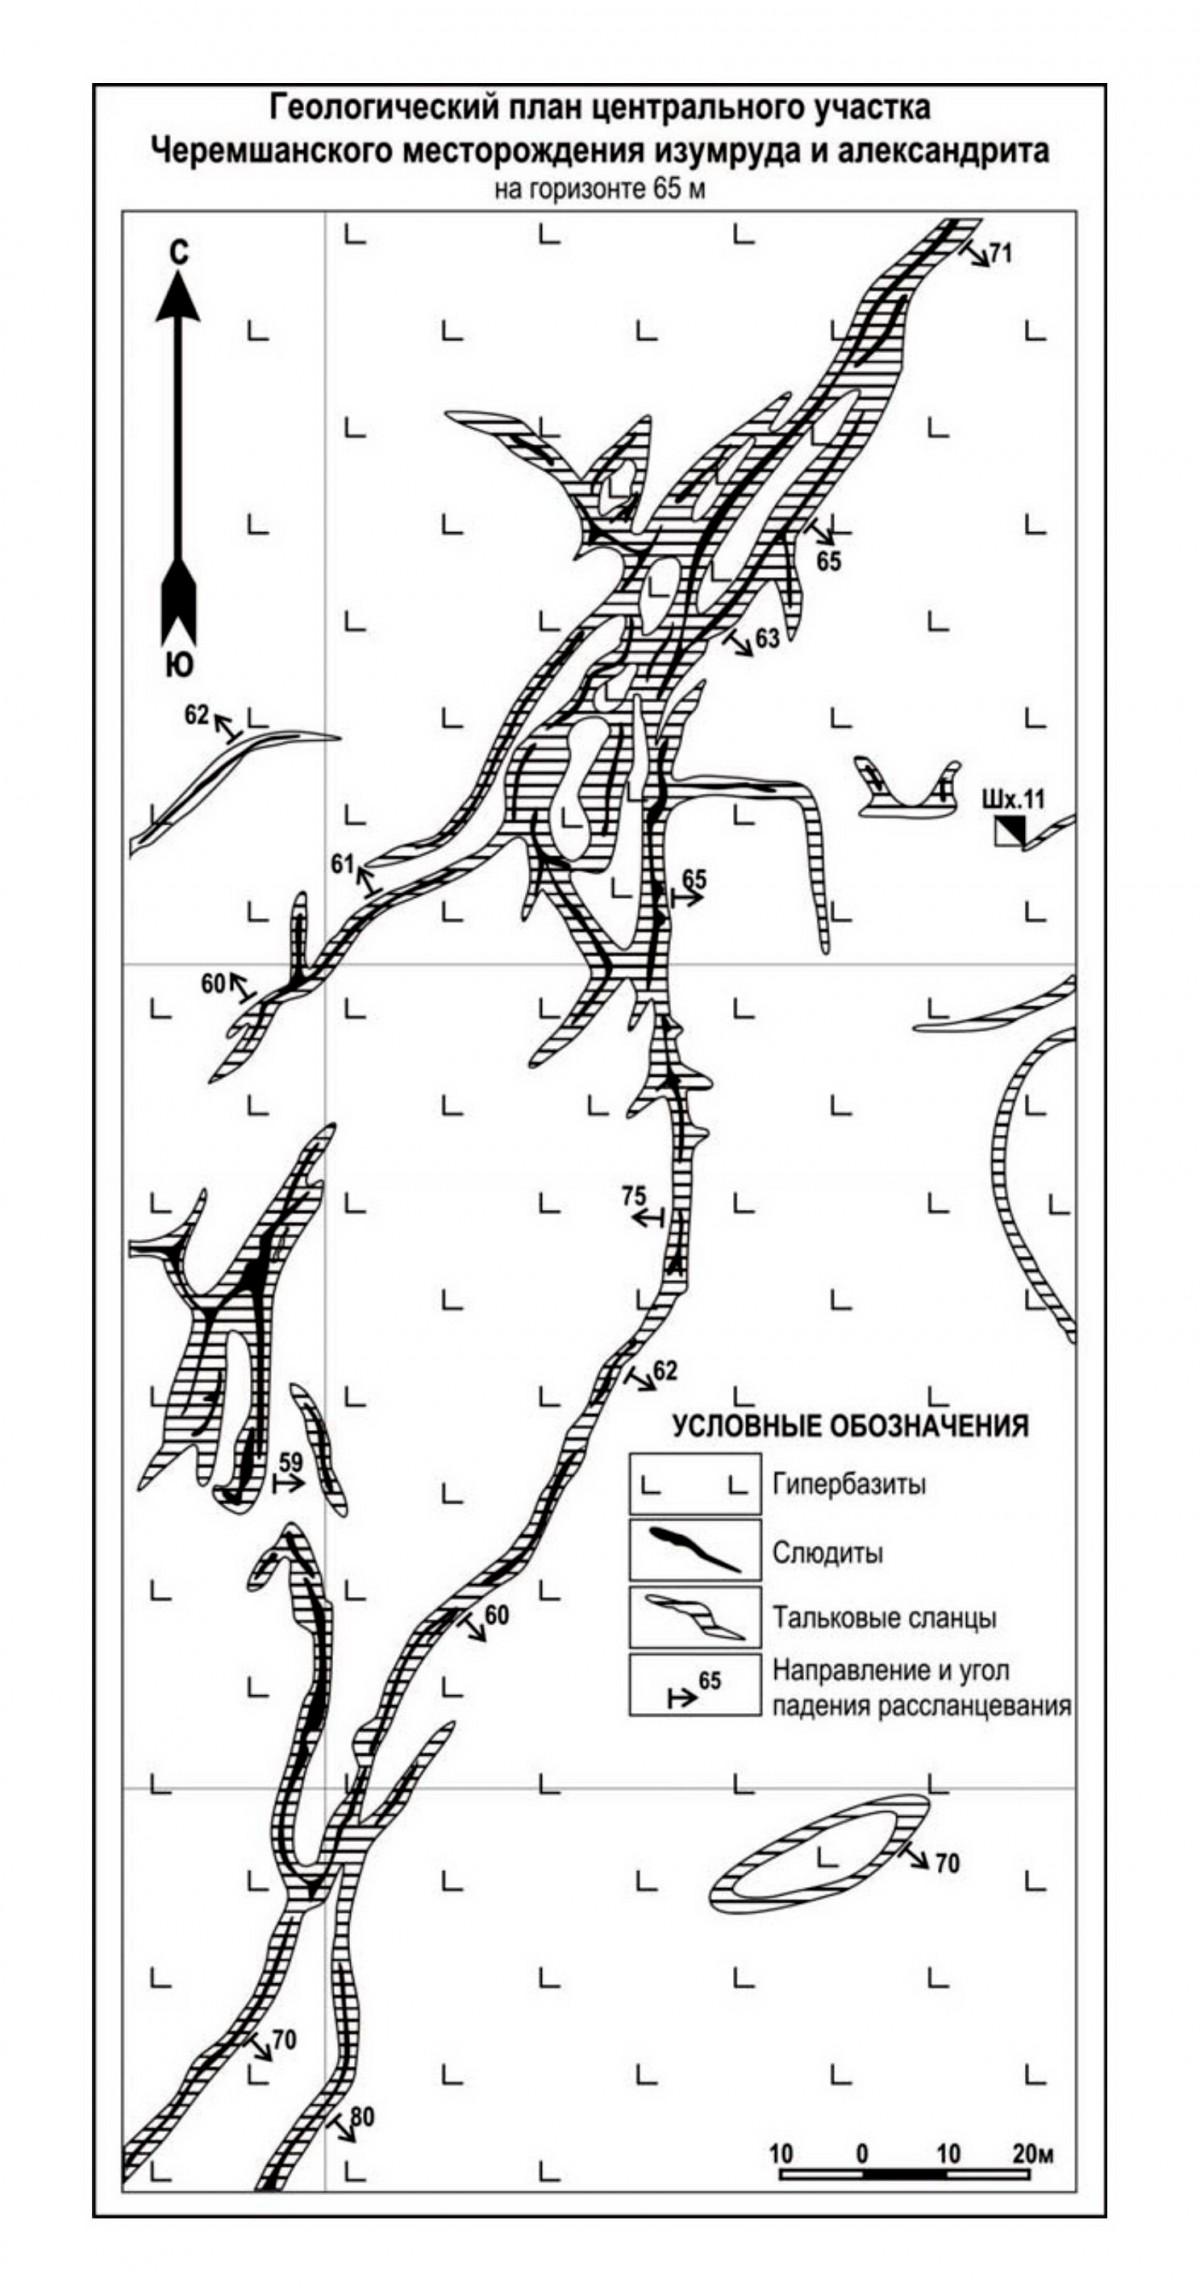 Схема центральной части Черемшанского месторождения. Минералы и месторождения. webmineral.ru